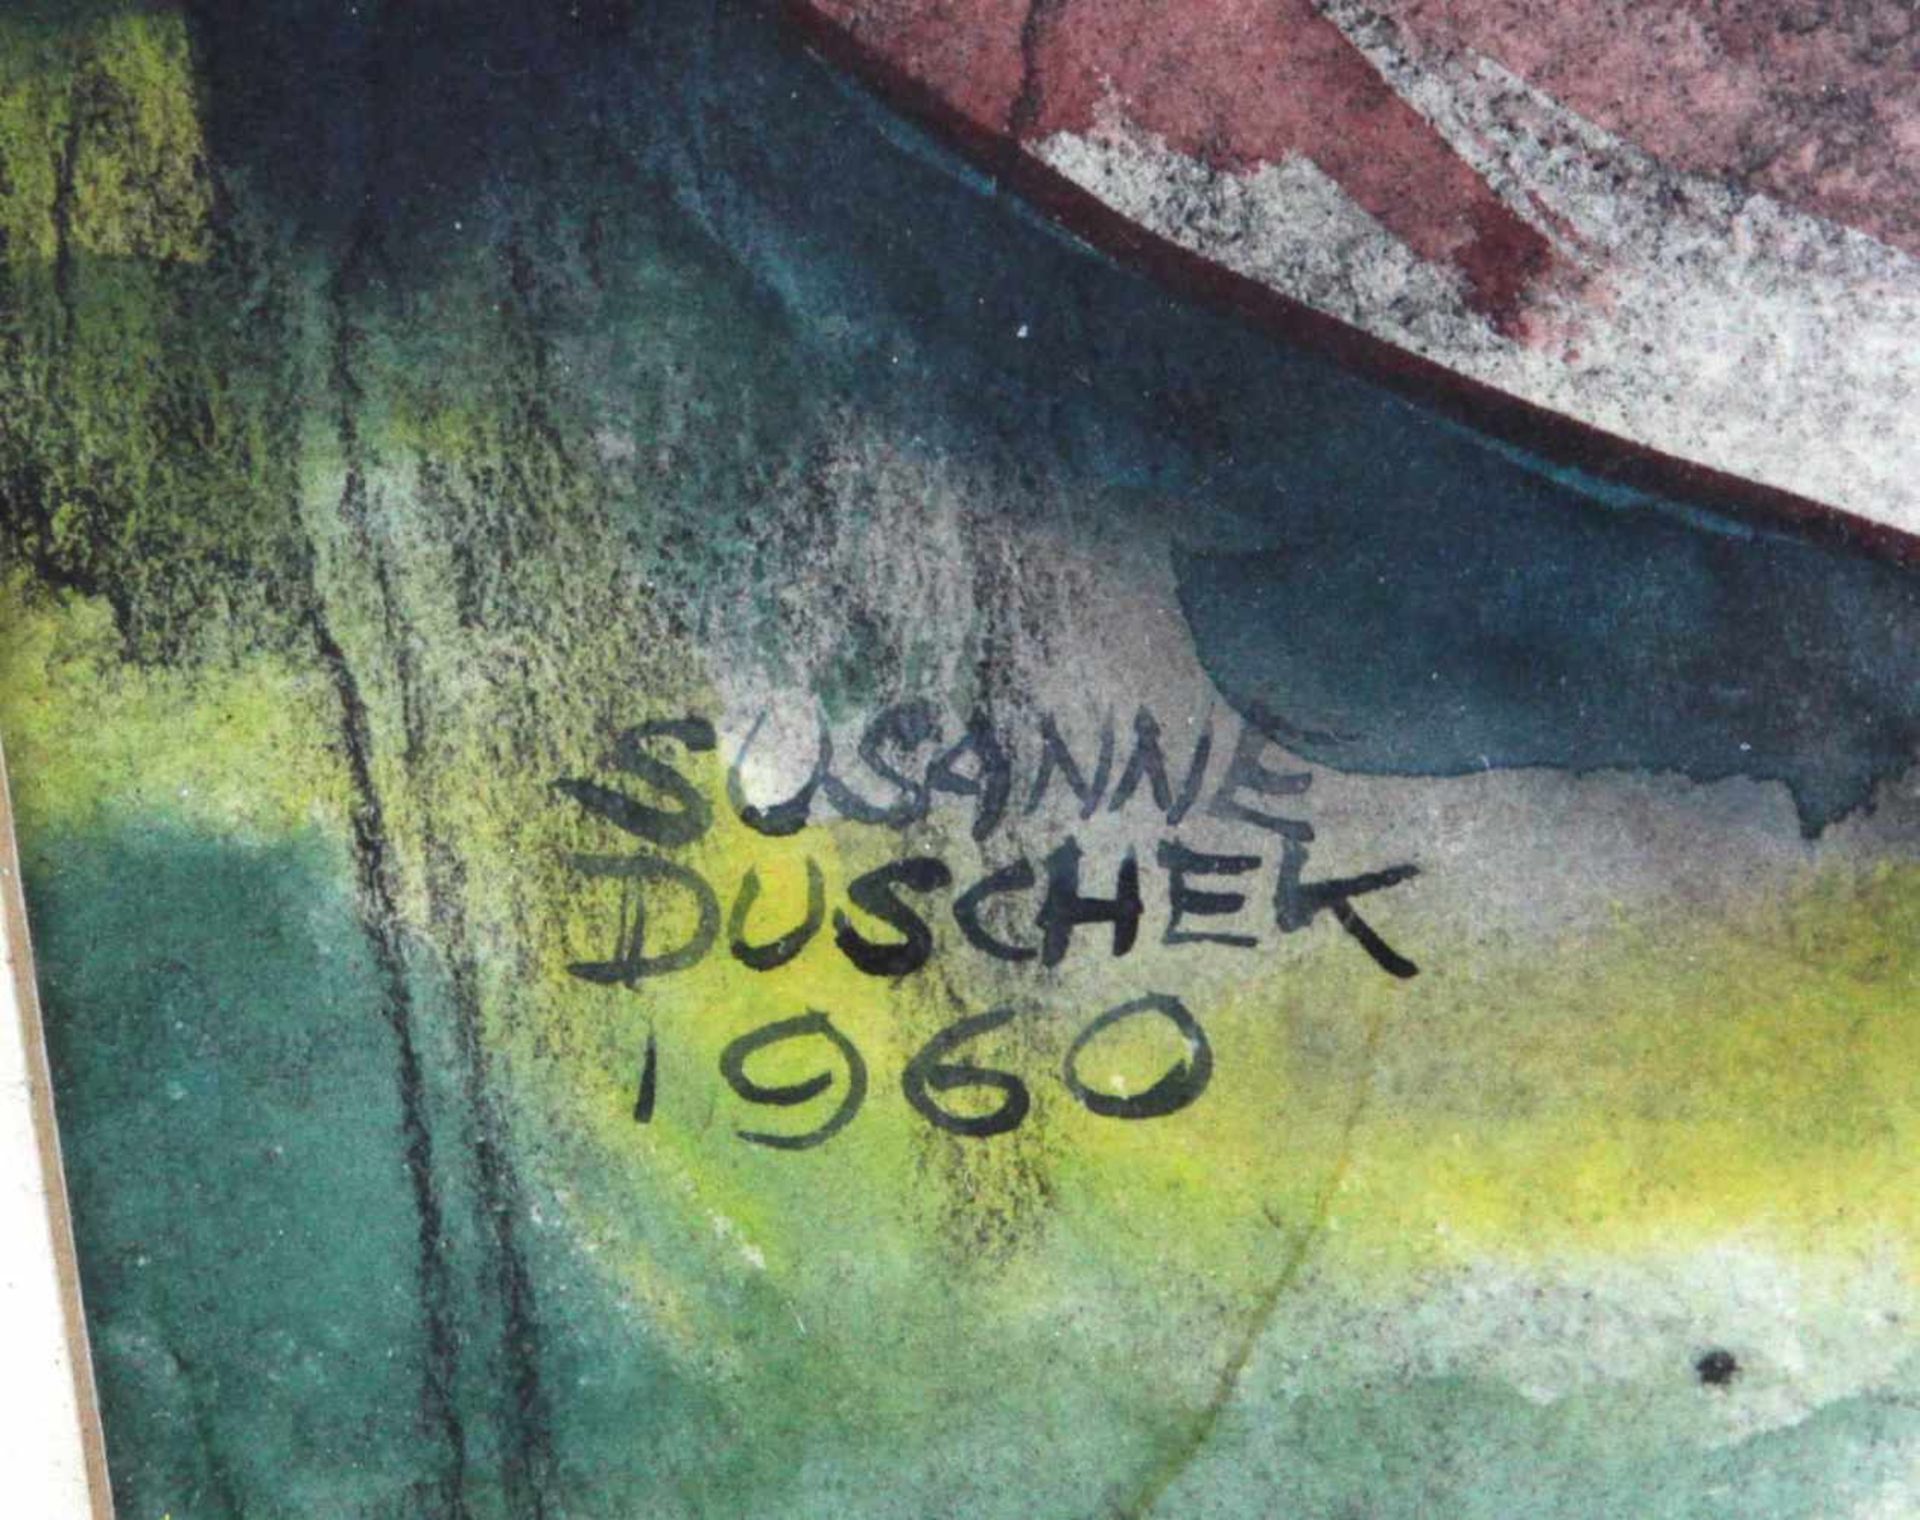 2 Damen - Duschek, Susanne 1960Aquarell links unten signiert Susanne Duscheck sowie datiert 1960, - Bild 2 aus 2